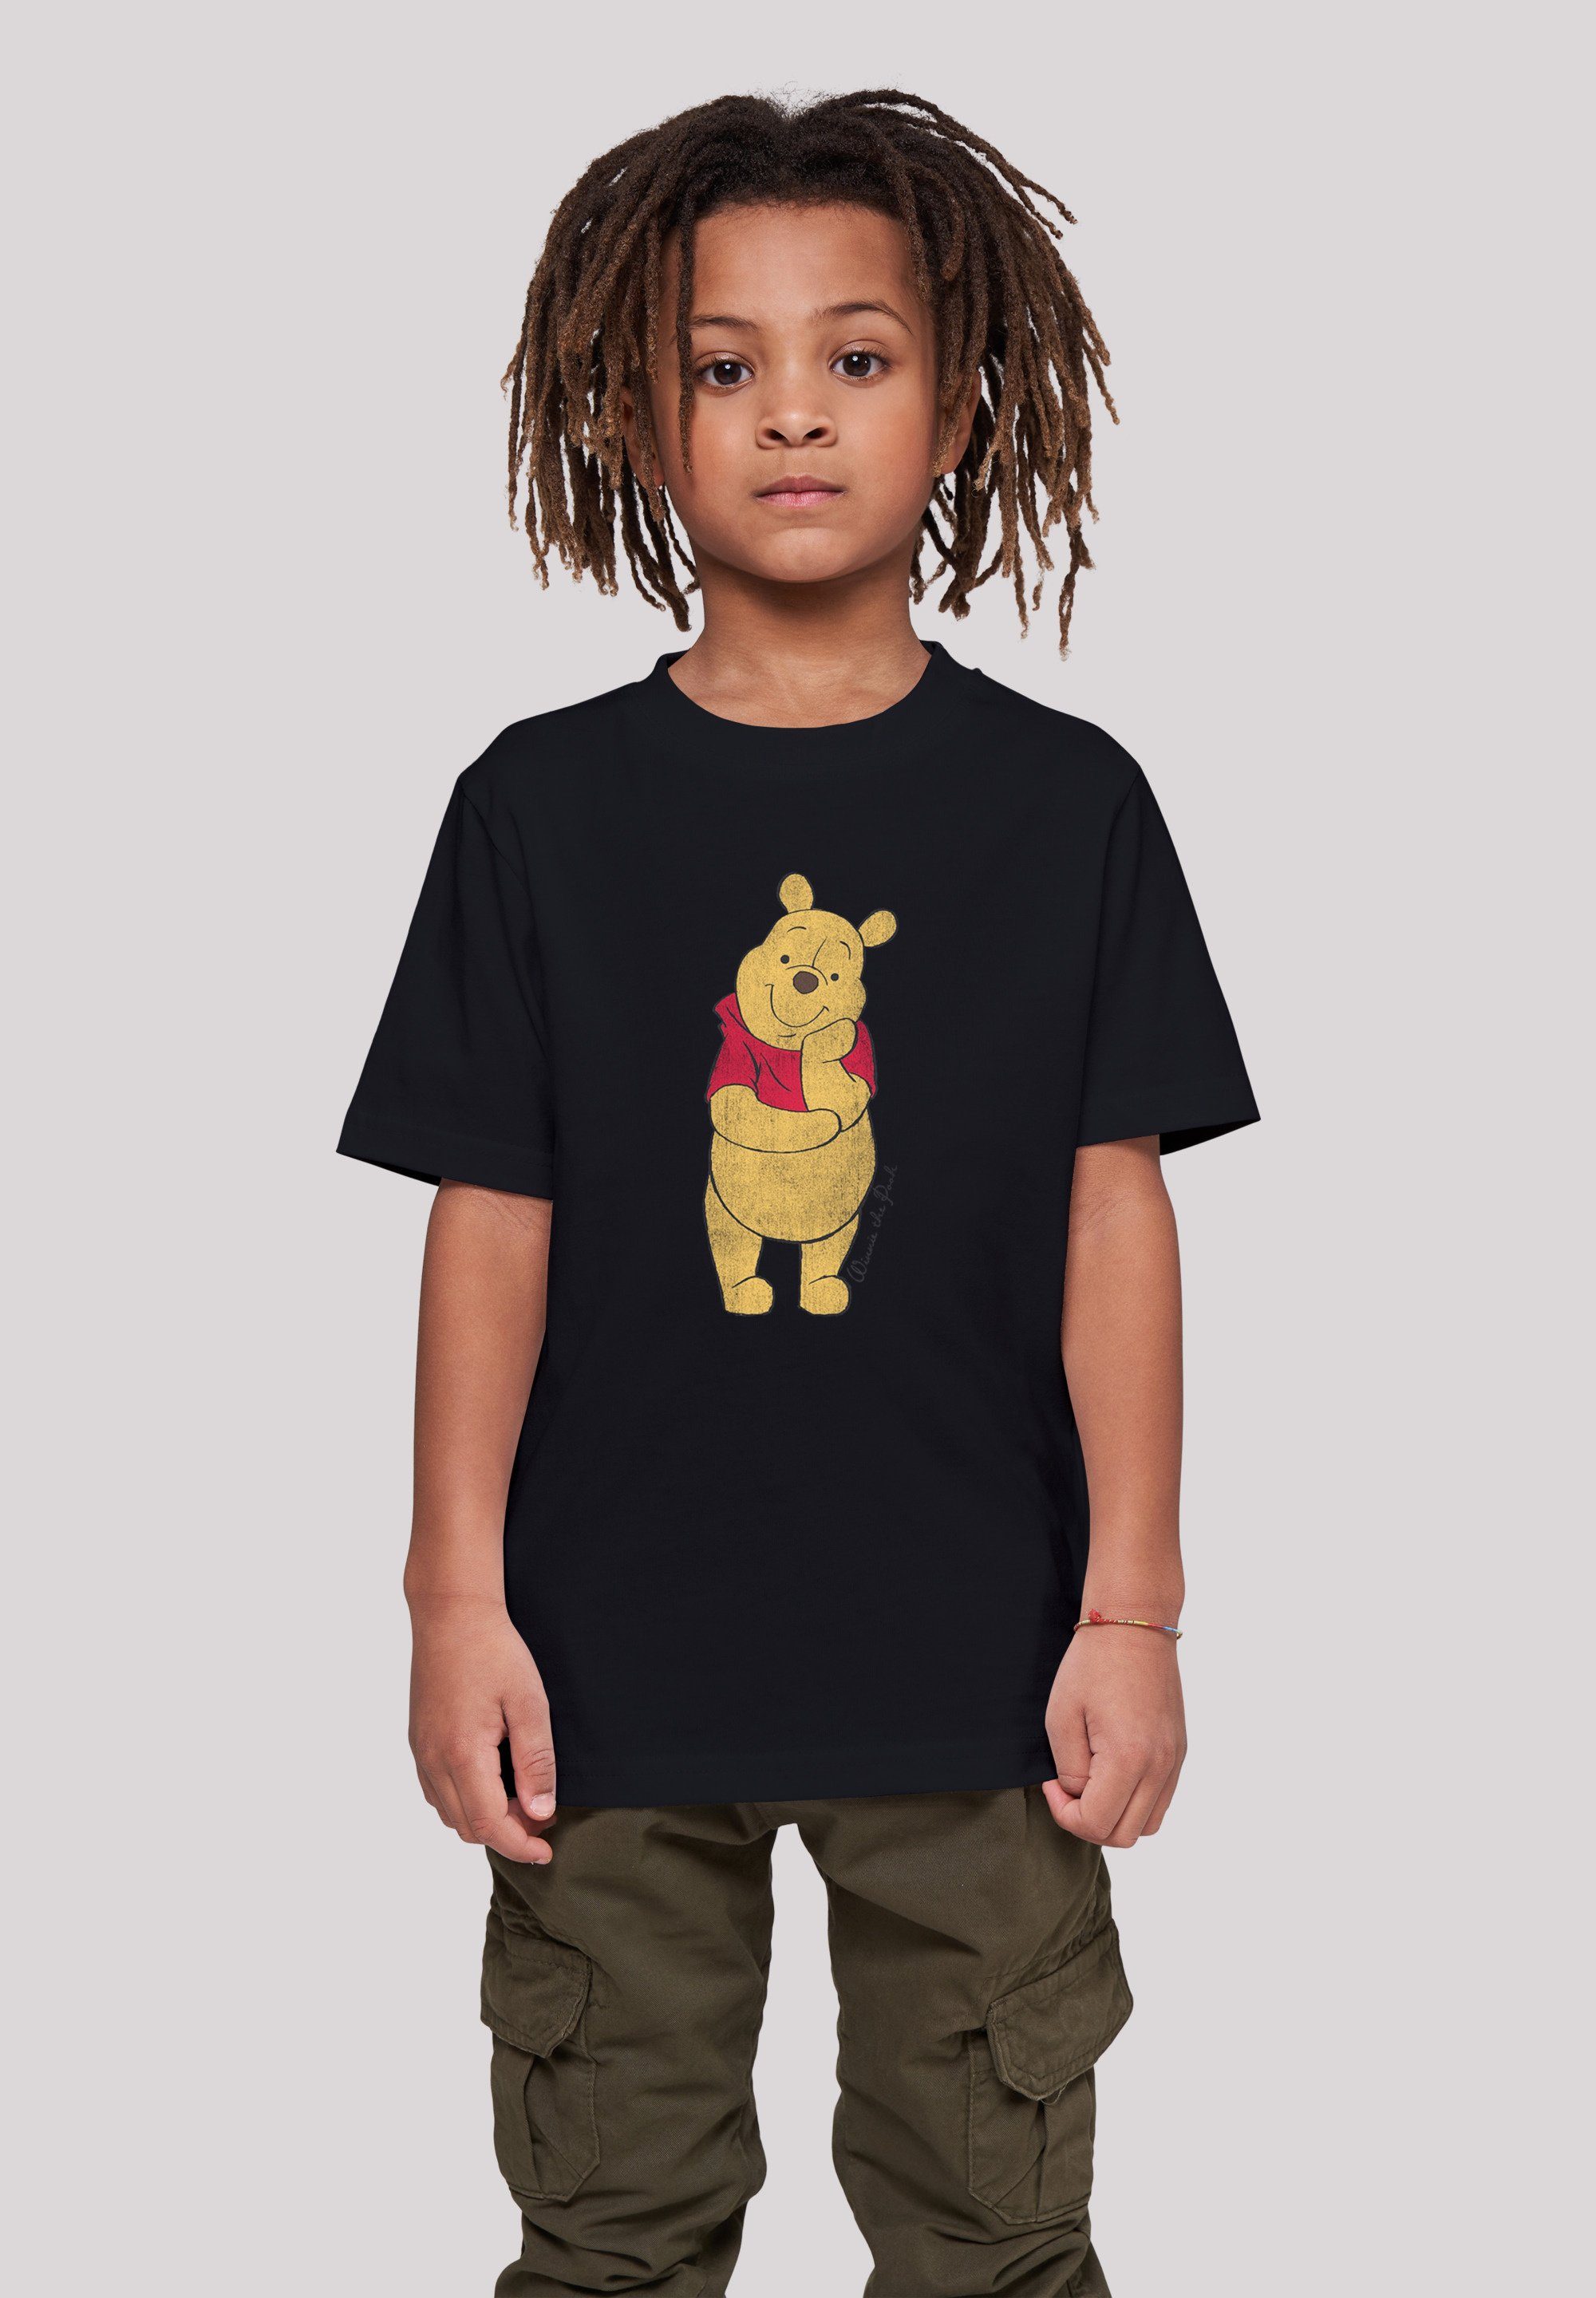 F4NT4STIC T-Shirt Disney Winnie The Pooh Classic Unisex Kinder,Premium Merch,Jungen,Mädchen,Bedruckt schwarz